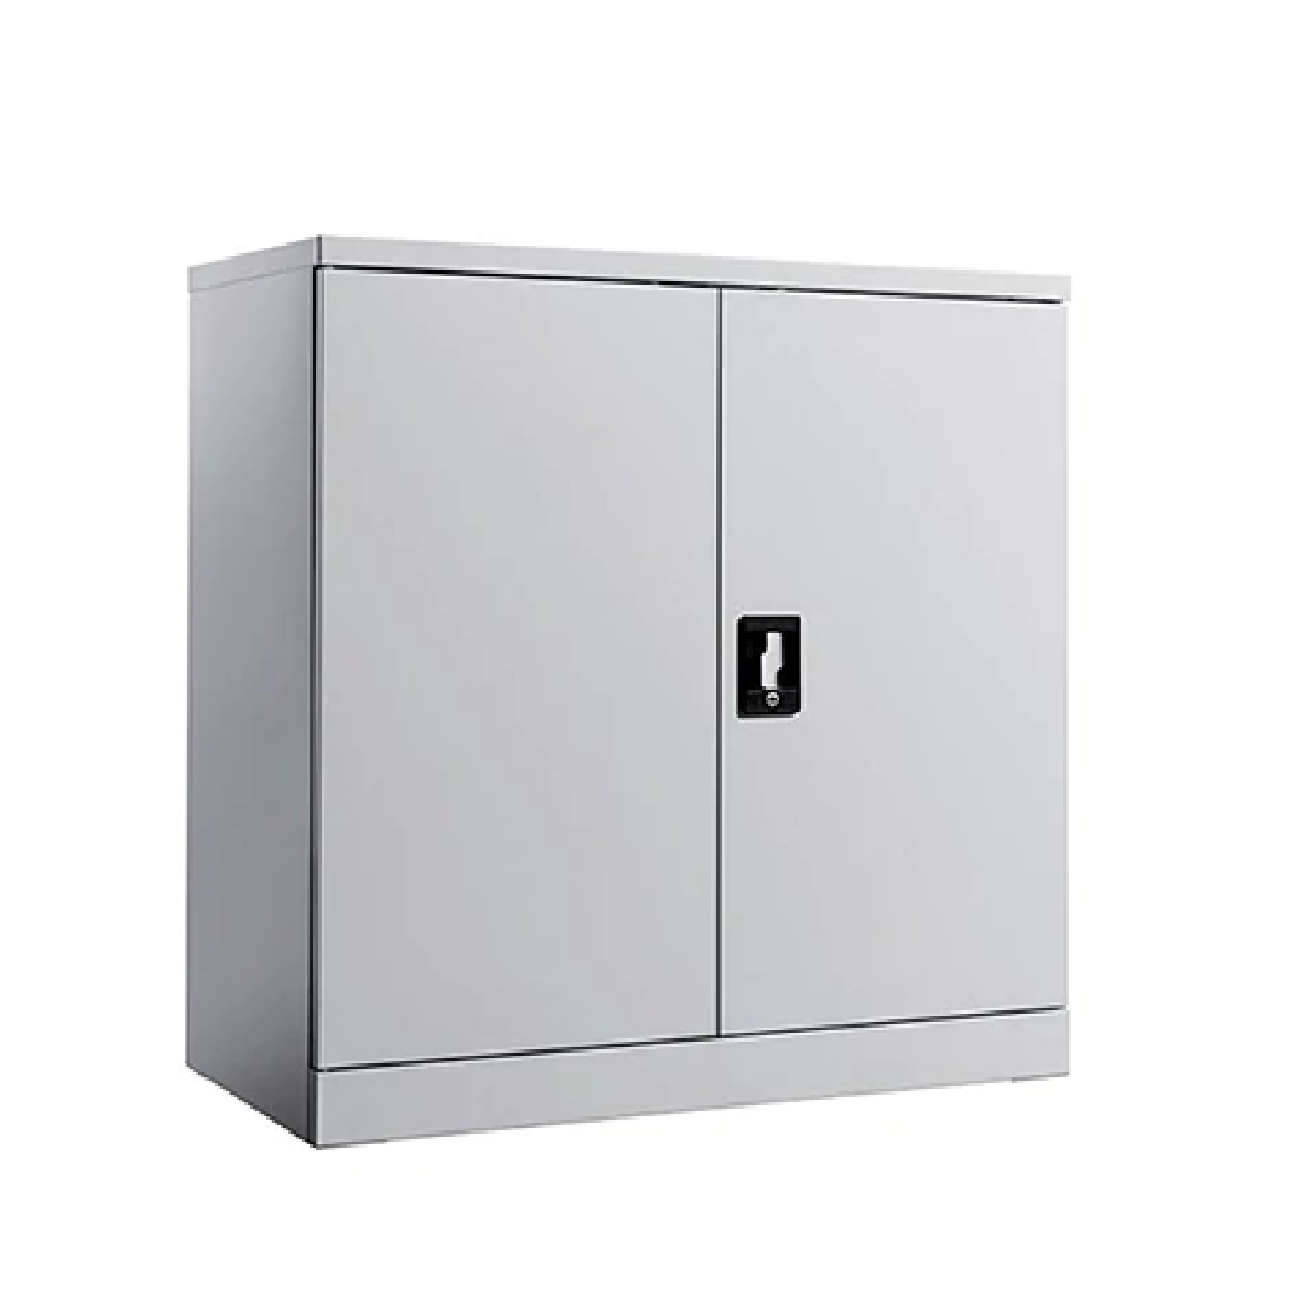 SY203 HALF HEIGHT 2 DOOR Metal Cabinet (SWING DOOR)